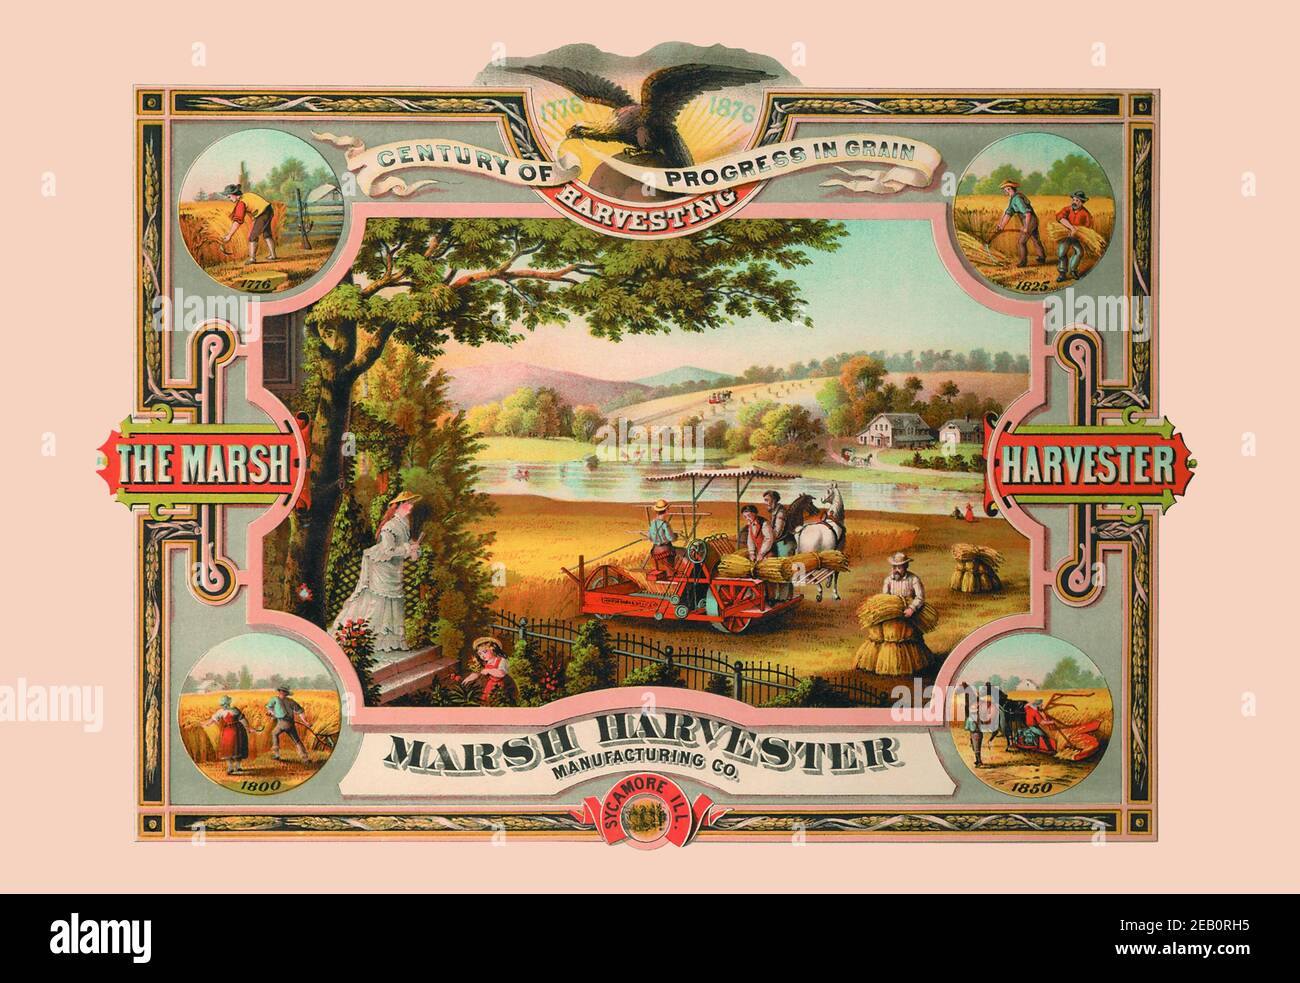 Marsh Harvester - Jahrhundert des Fortschritts in Getreide 1876 Stockfoto